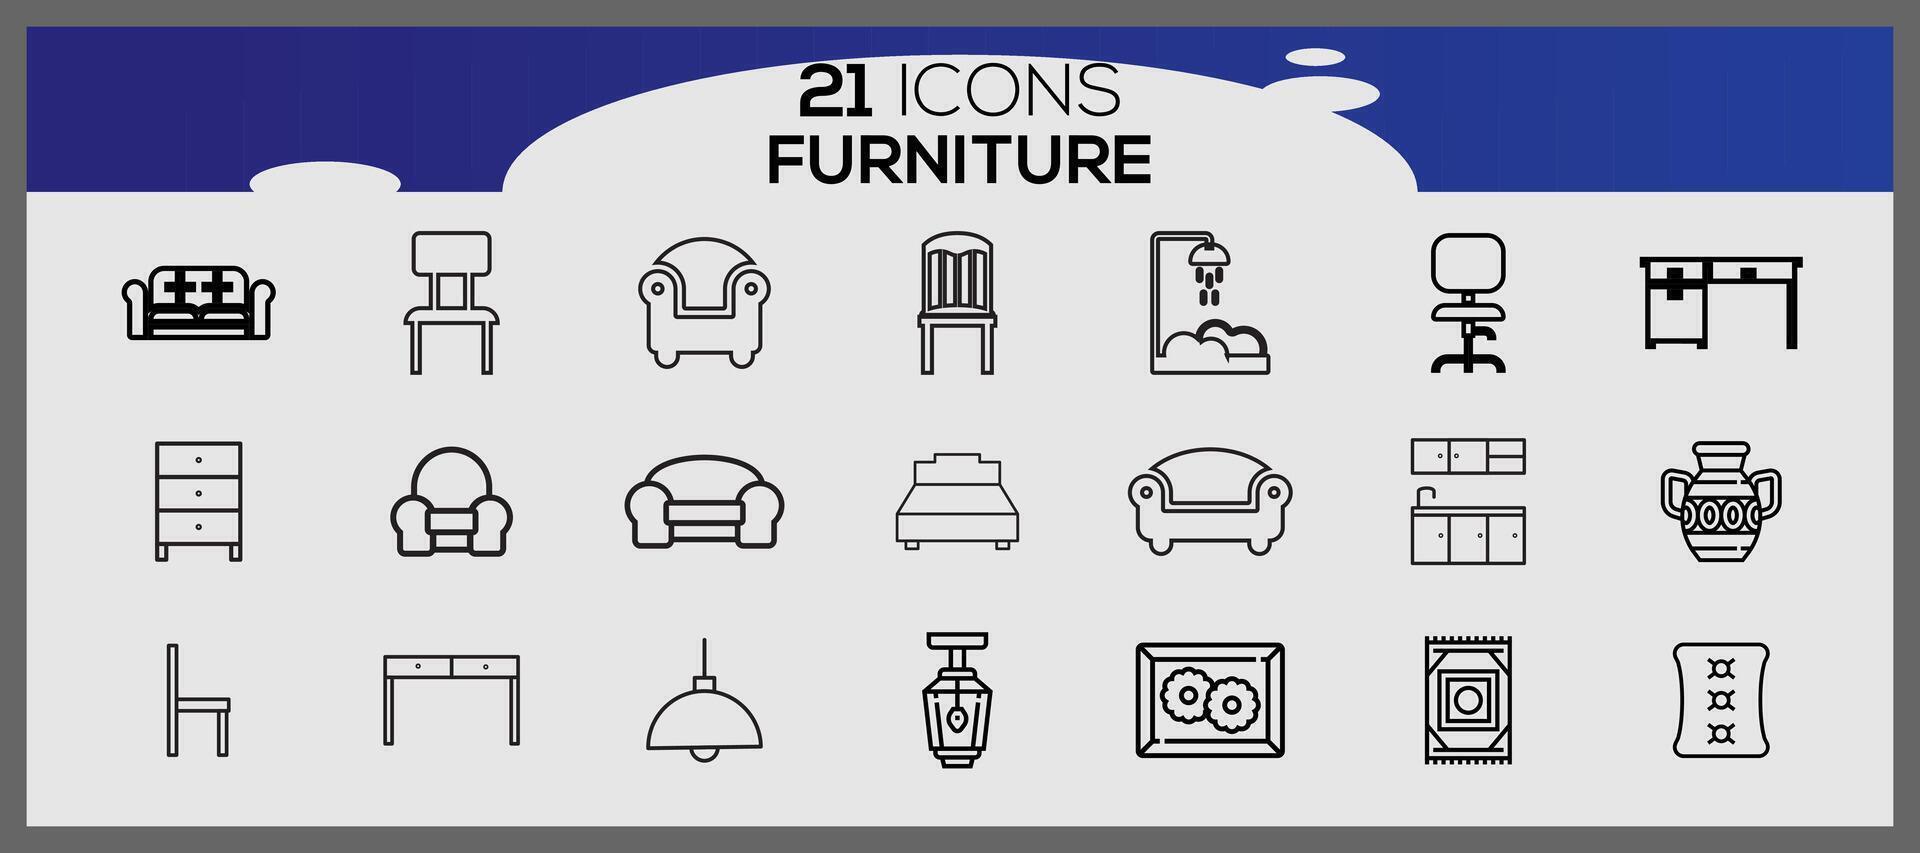 vector meubilair en huis decoraties reeks van pictogrammen bedrijf en pictogrammen reeks meubilair elementen reeks